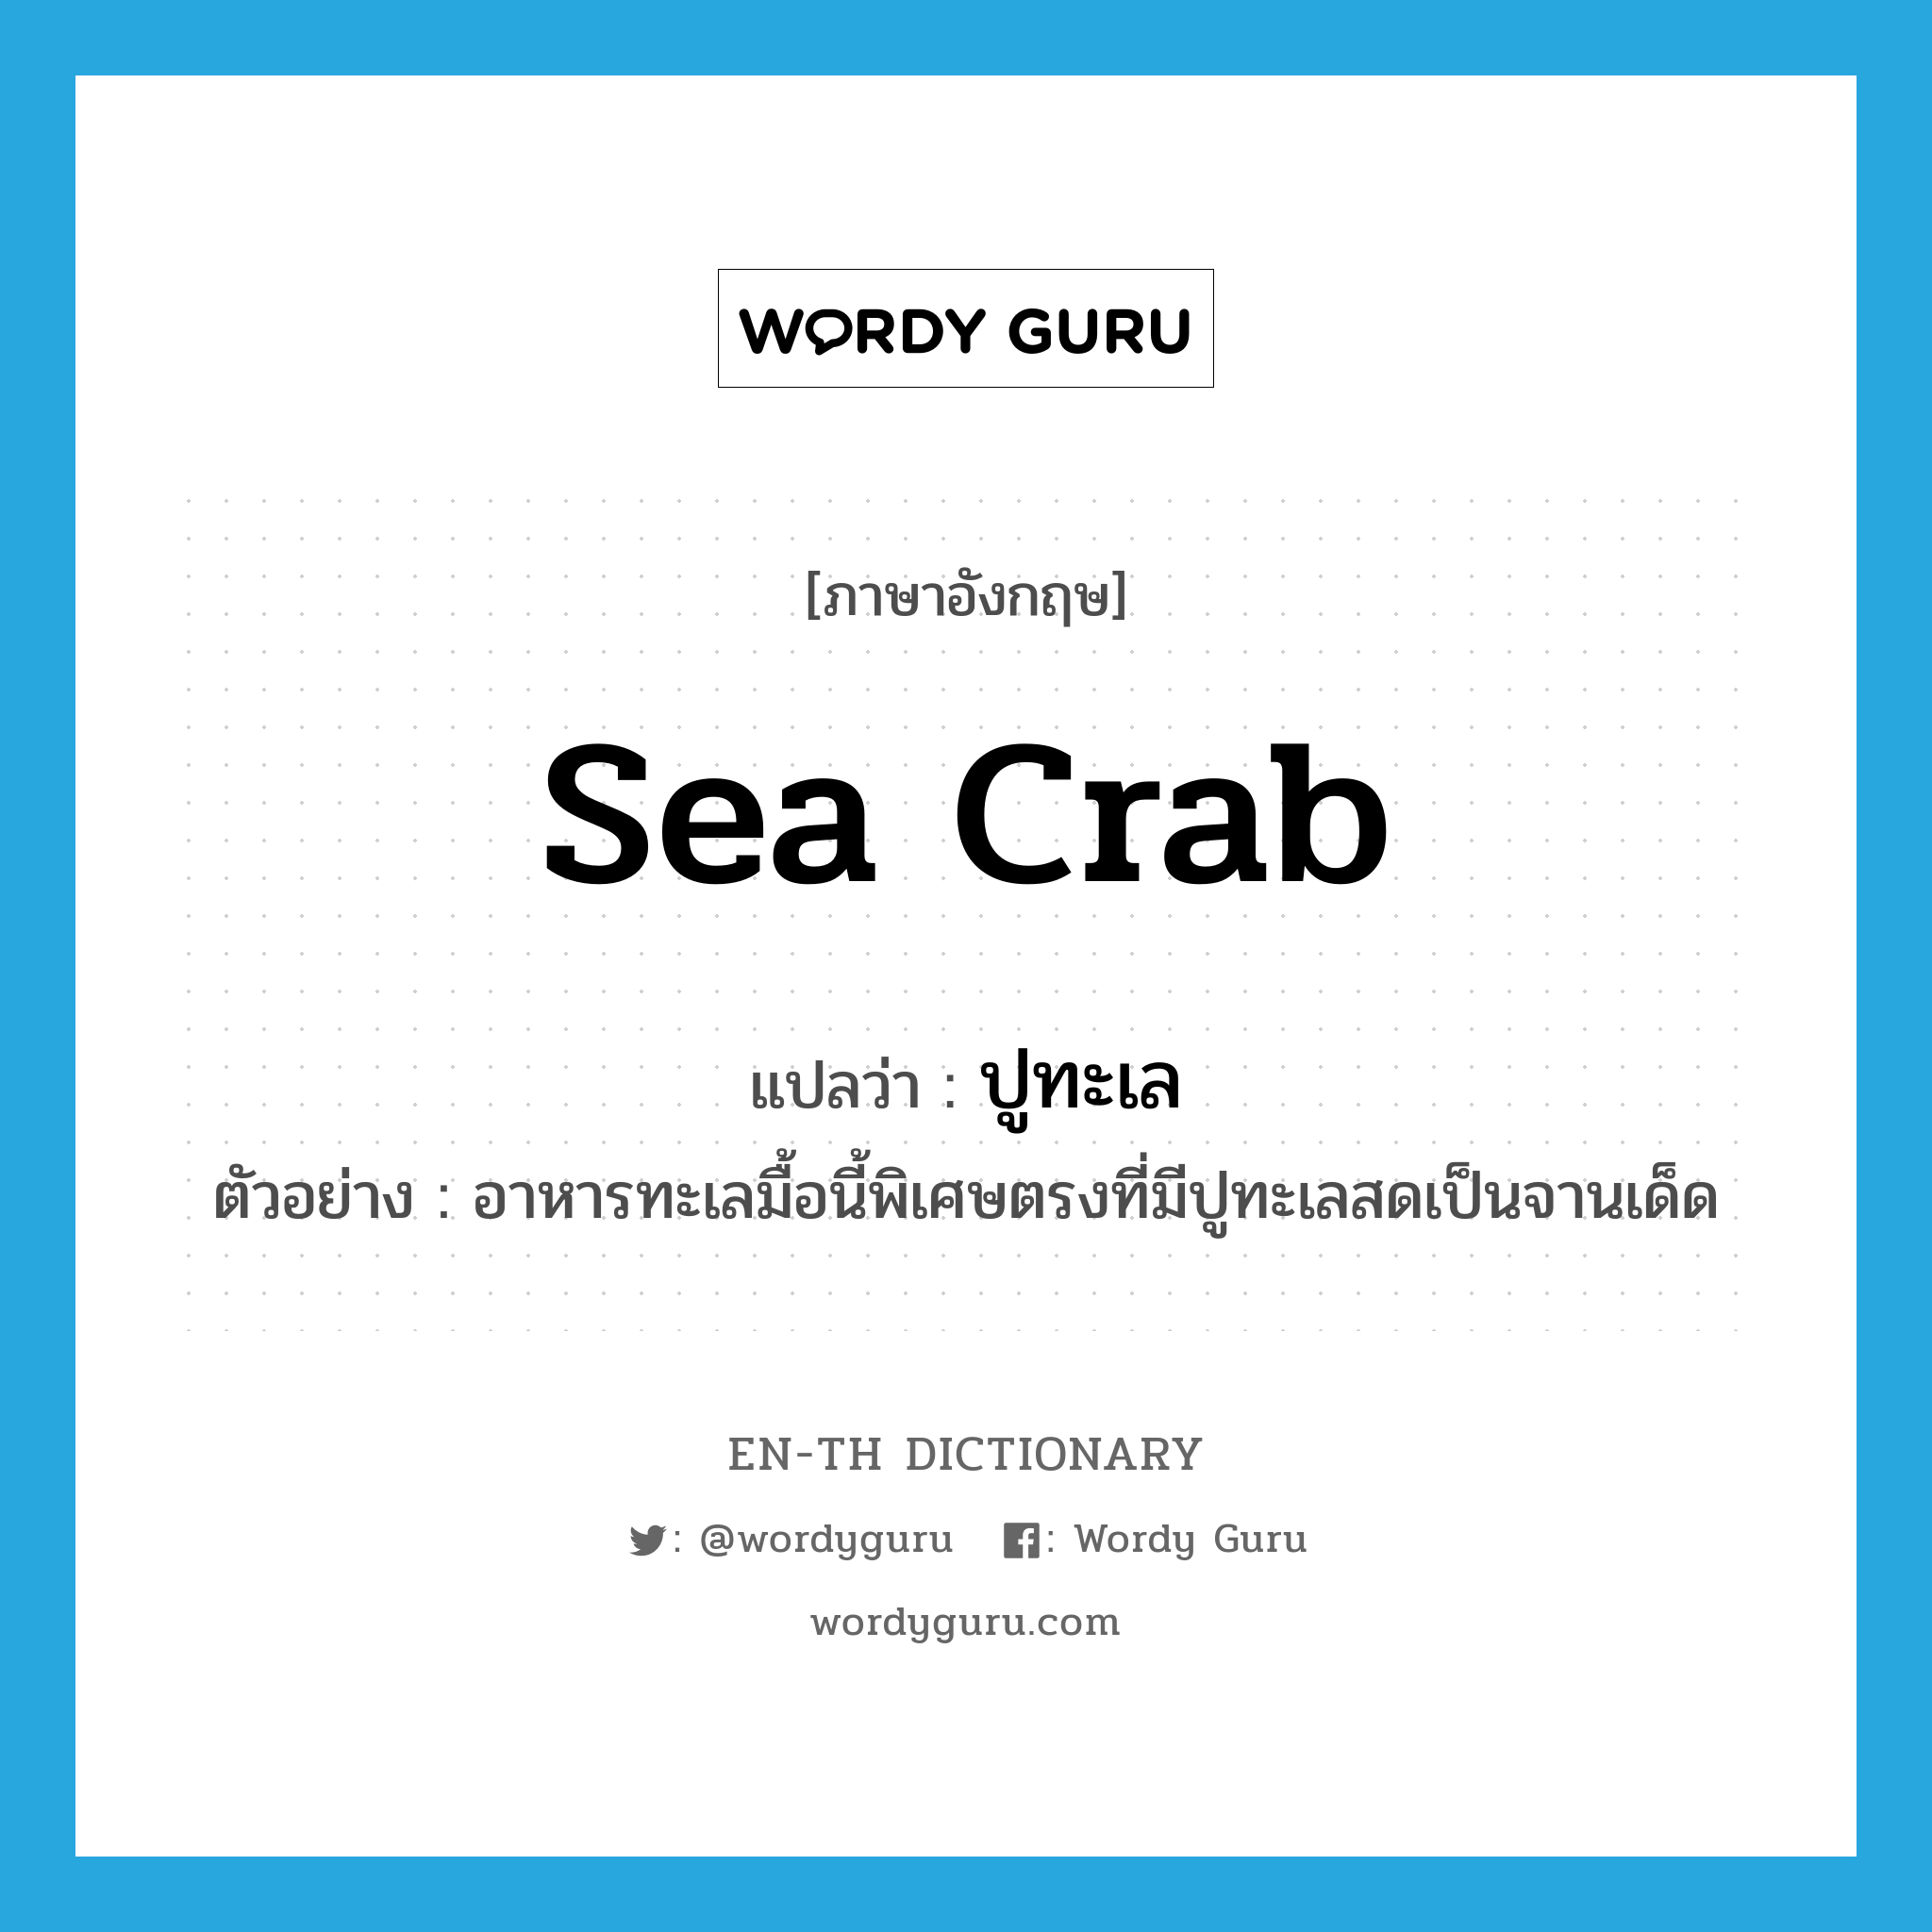 sea crab แปลว่า?, คำศัพท์ภาษาอังกฤษ sea crab แปลว่า ปูทะเล ประเภท N ตัวอย่าง อาหารทะเลมื้อนี้พิเศษตรงที่มีปูทะเลสดเป็นจานเด็ด หมวด N